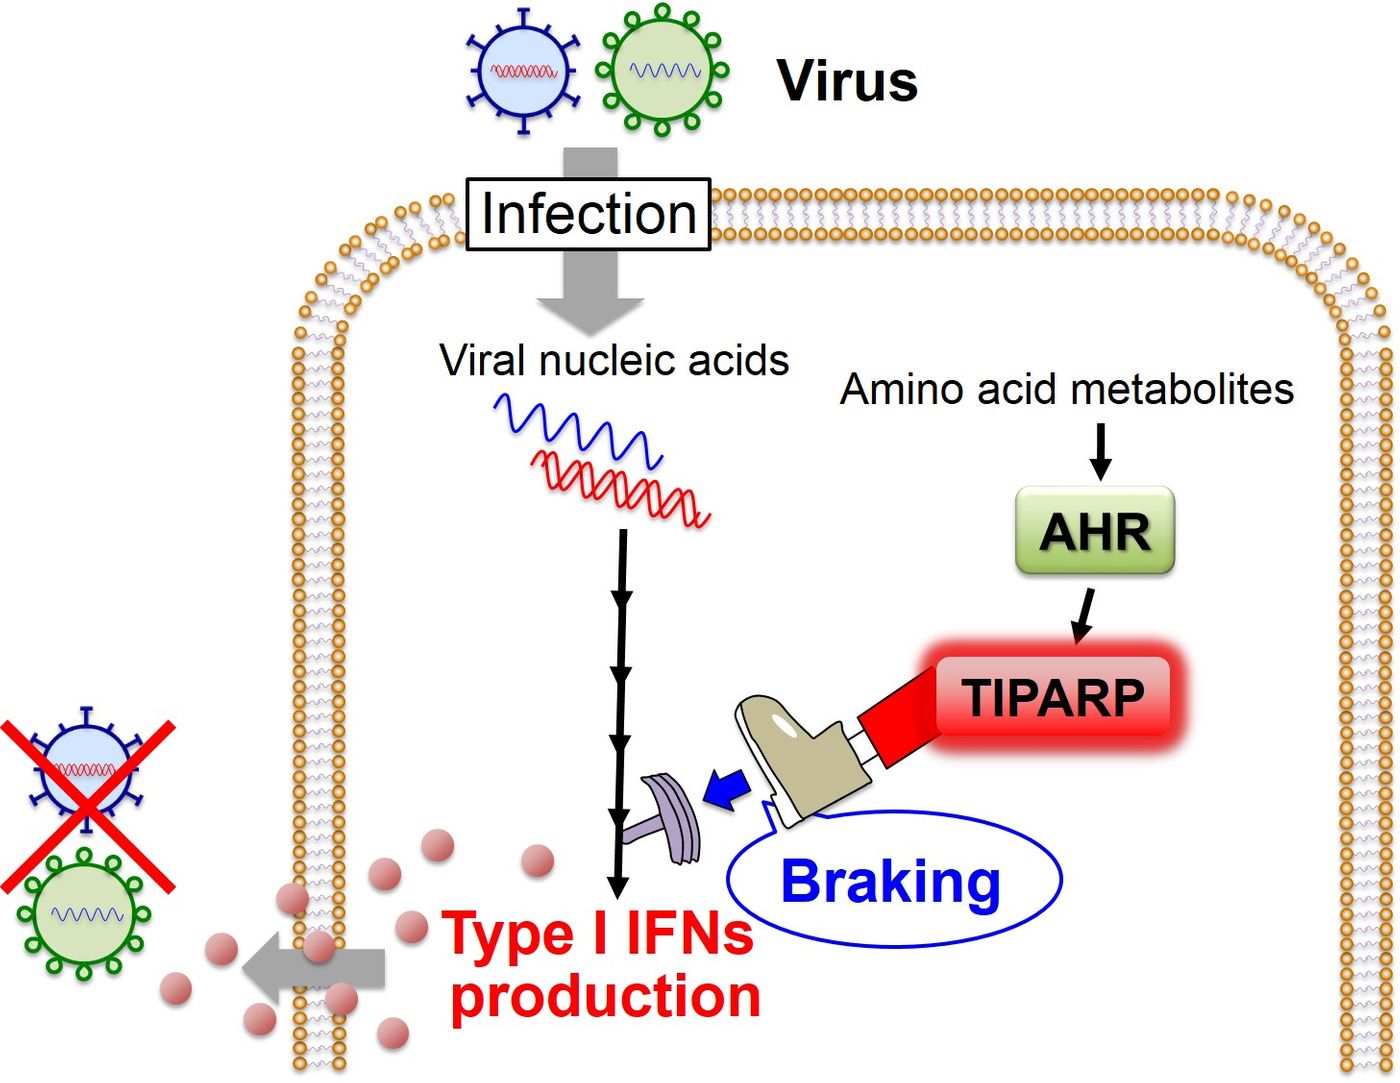 This image shows the AHR-mediated "braking" mechanism for the regulation of the antiviral IFN response. / Credit: Akinori TAKAOKA, Hokkaido University